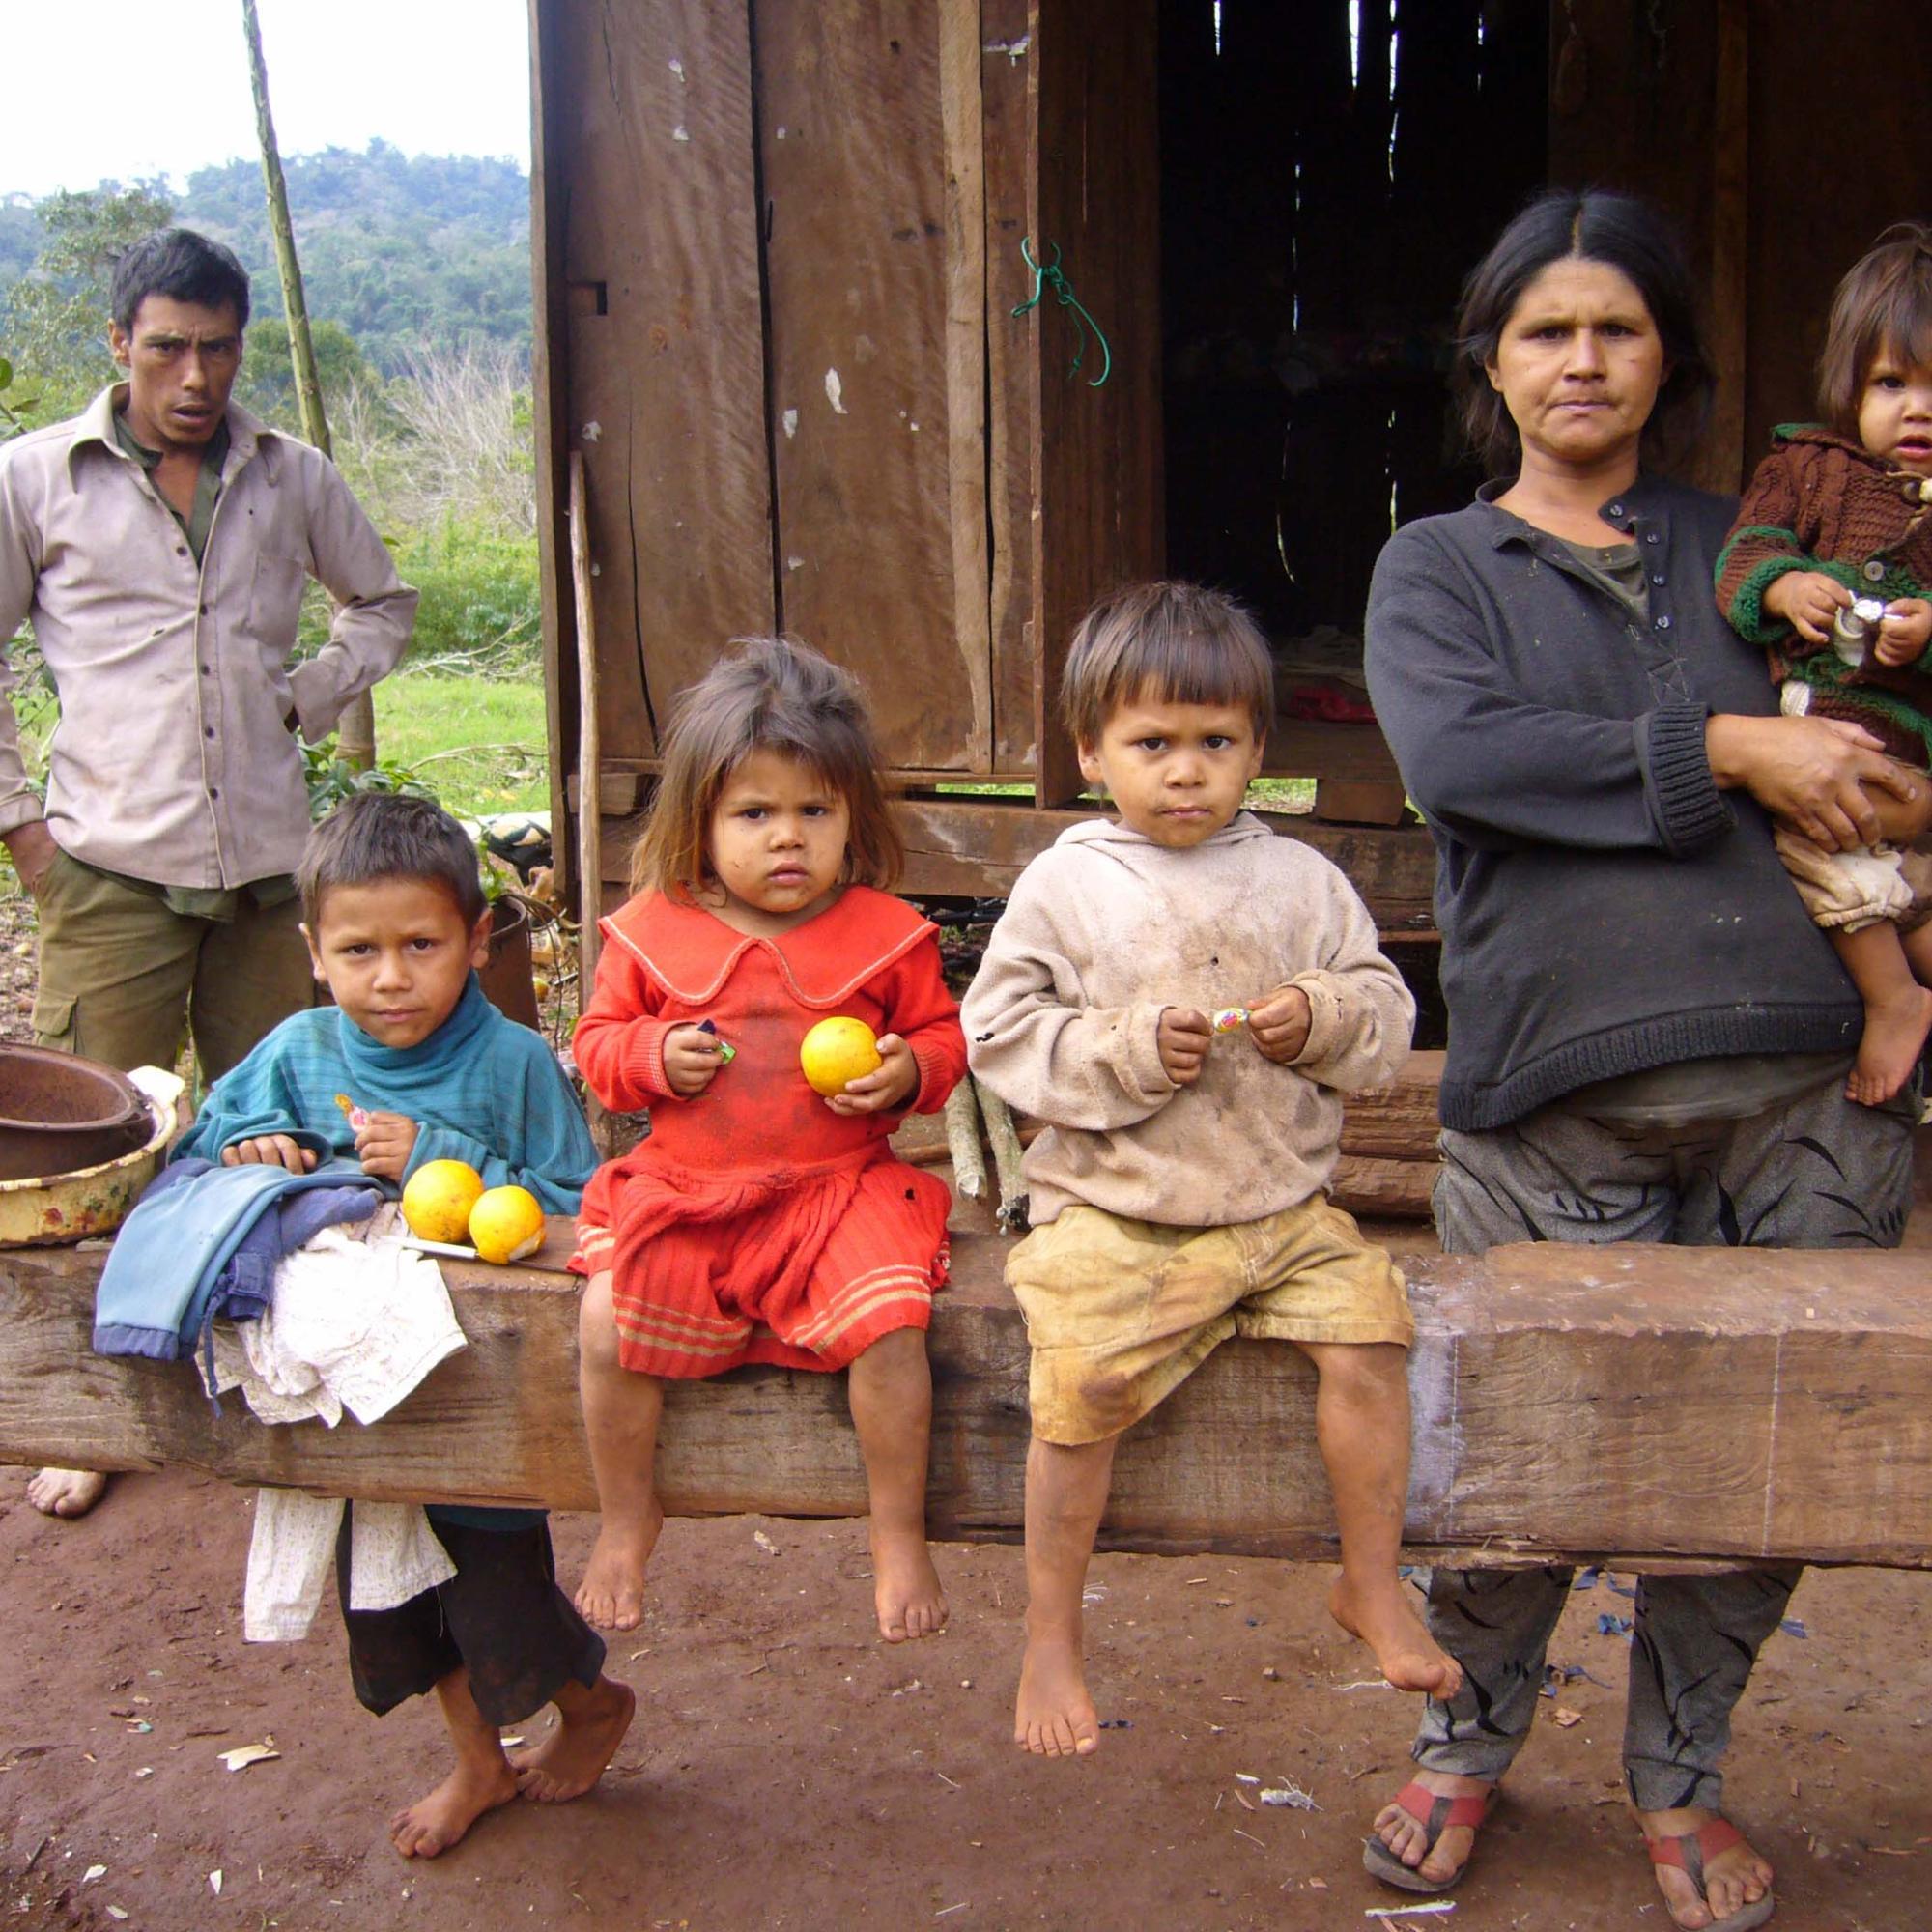 Familie in der argentinischen Provinz Misiones.